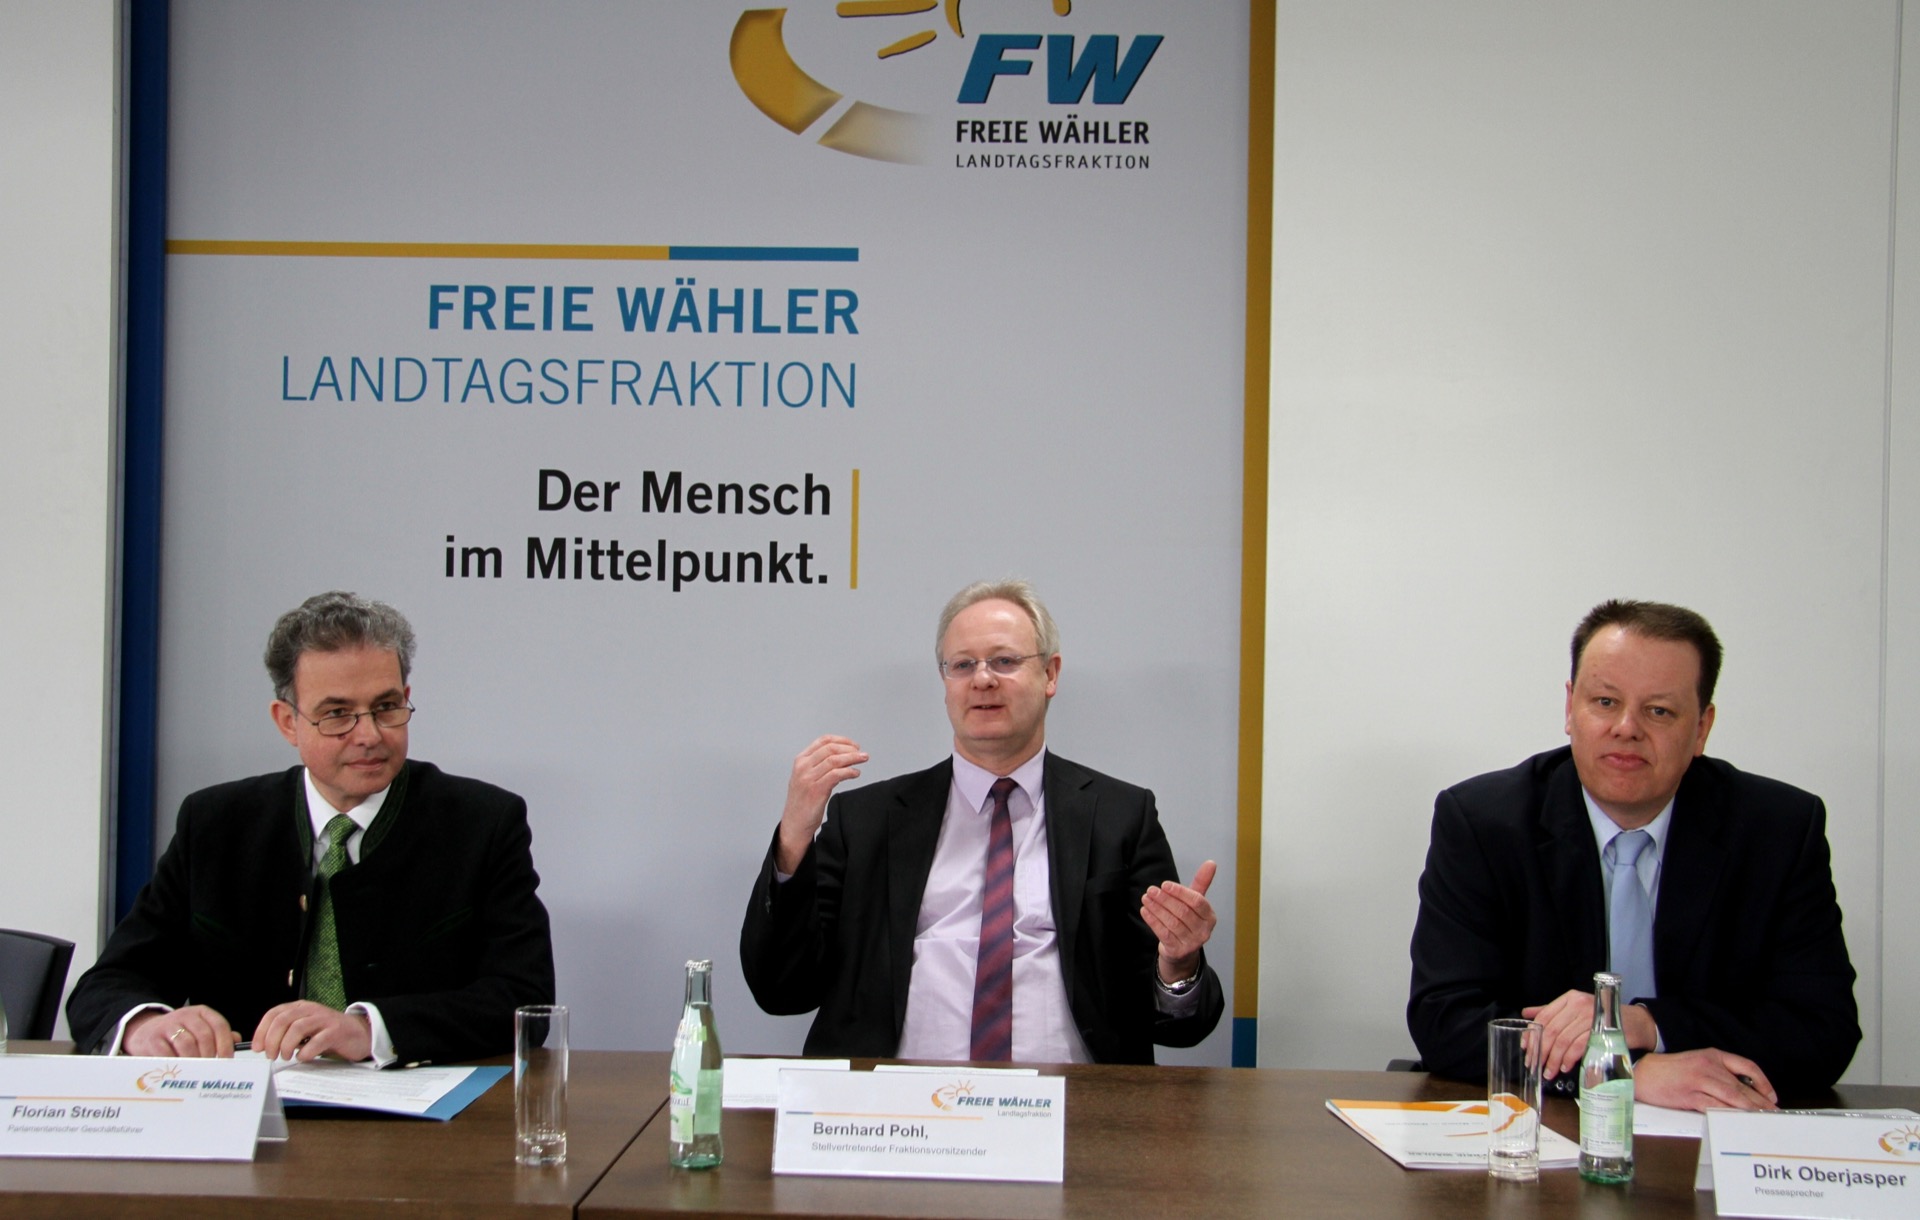 Die Abgeordneten Florian Streibl und Bernhard Pohl sowie Pressesprecher Dirk Oberjasper bei der Vorstellung der Petition im Landtag.